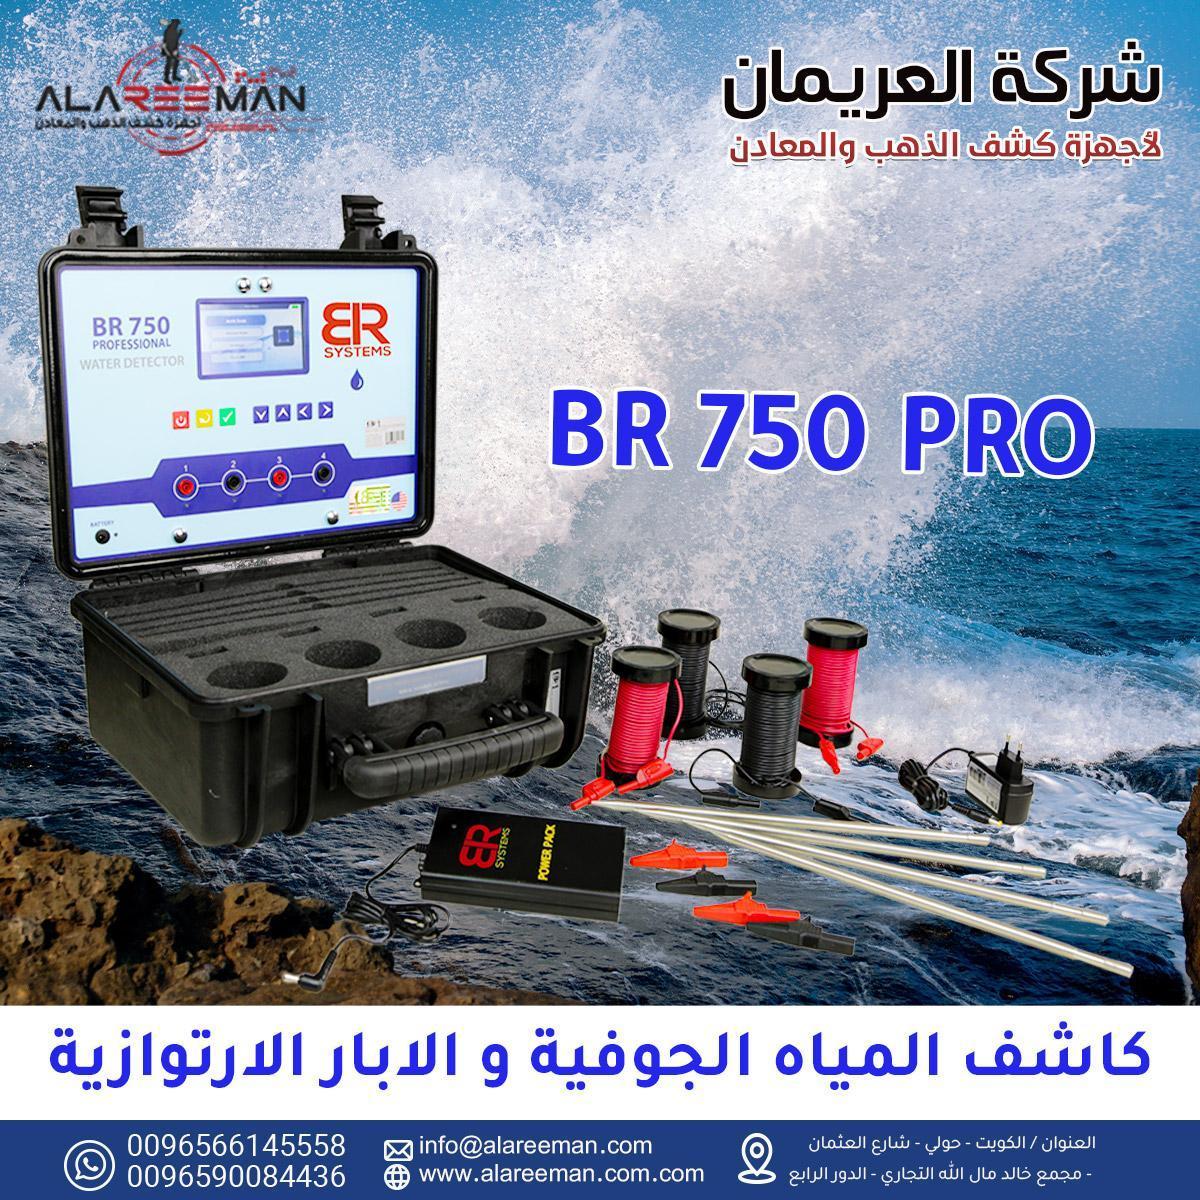 جهاز br750 pro الجيوفيزيائي لكشف المياه الجوفيه